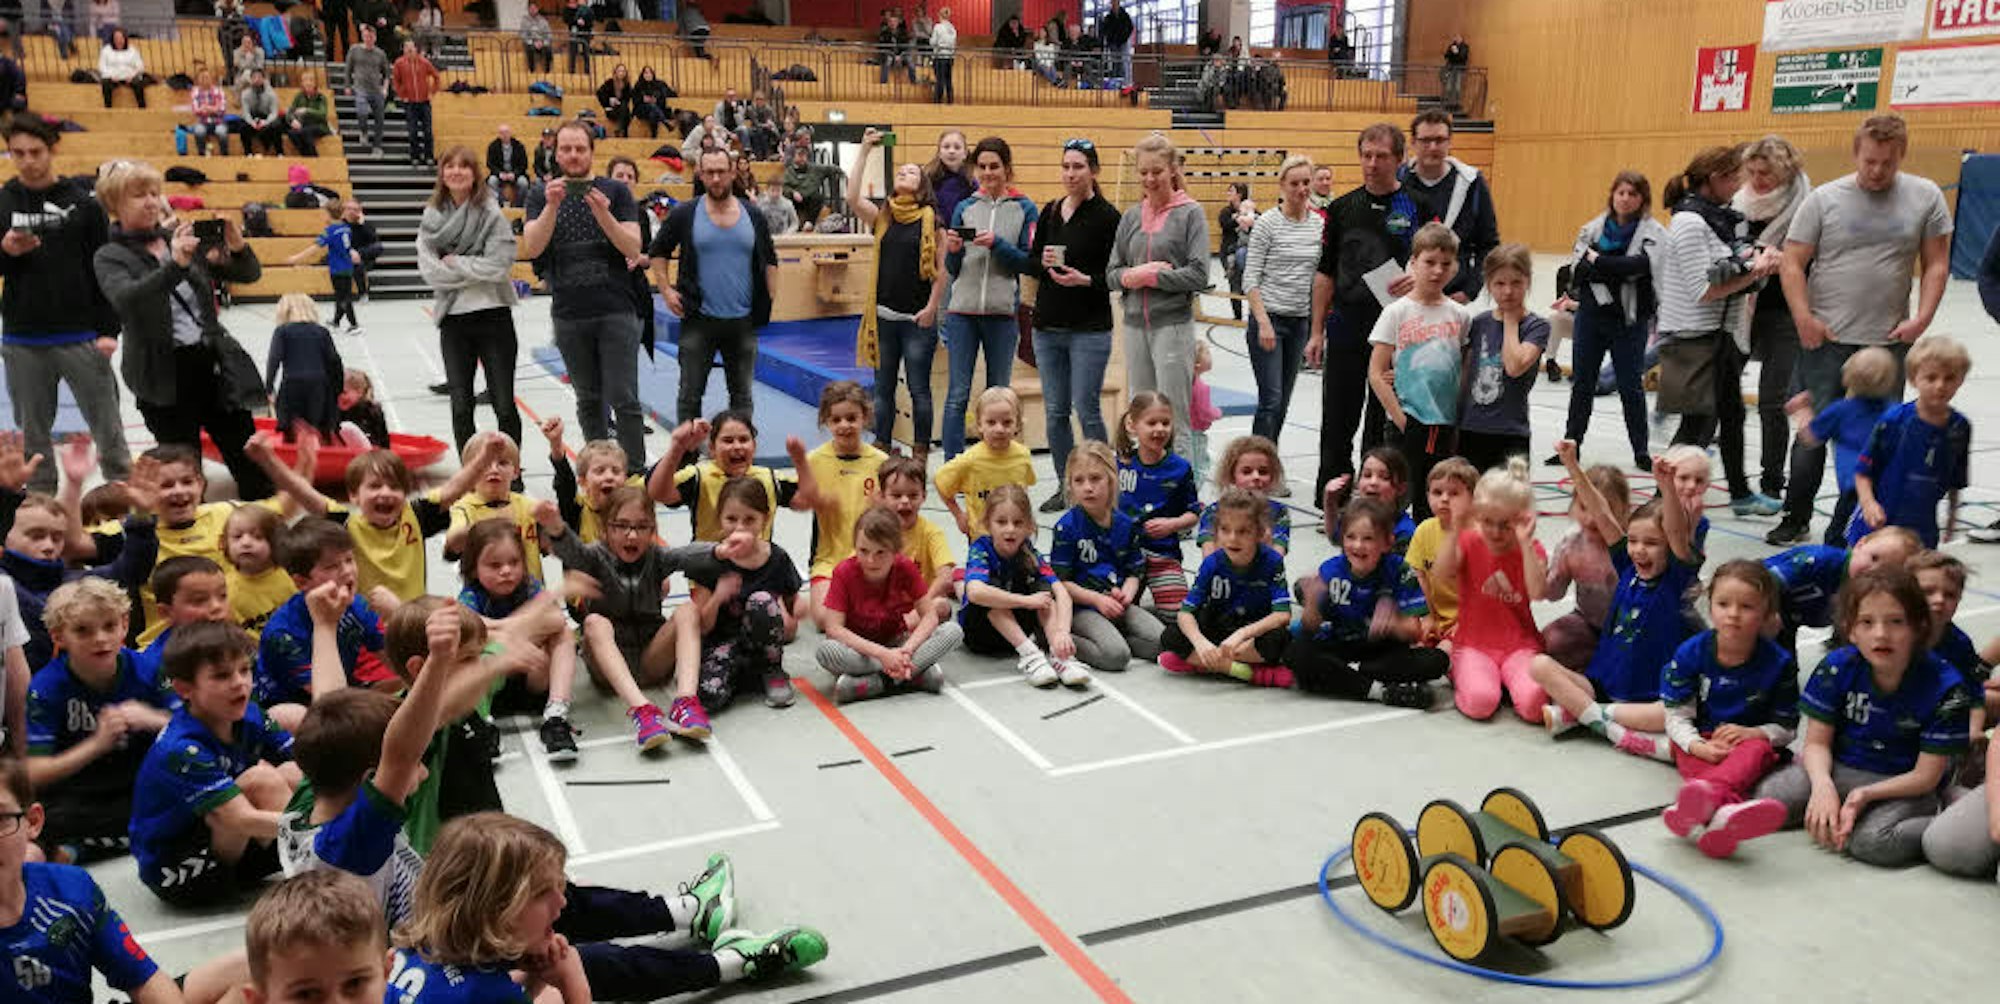 Am Minispielfestival der Handballspielgemeinschaft Siebengebirge nahmen 14 Teams mit knapp 100 Kindern teil.